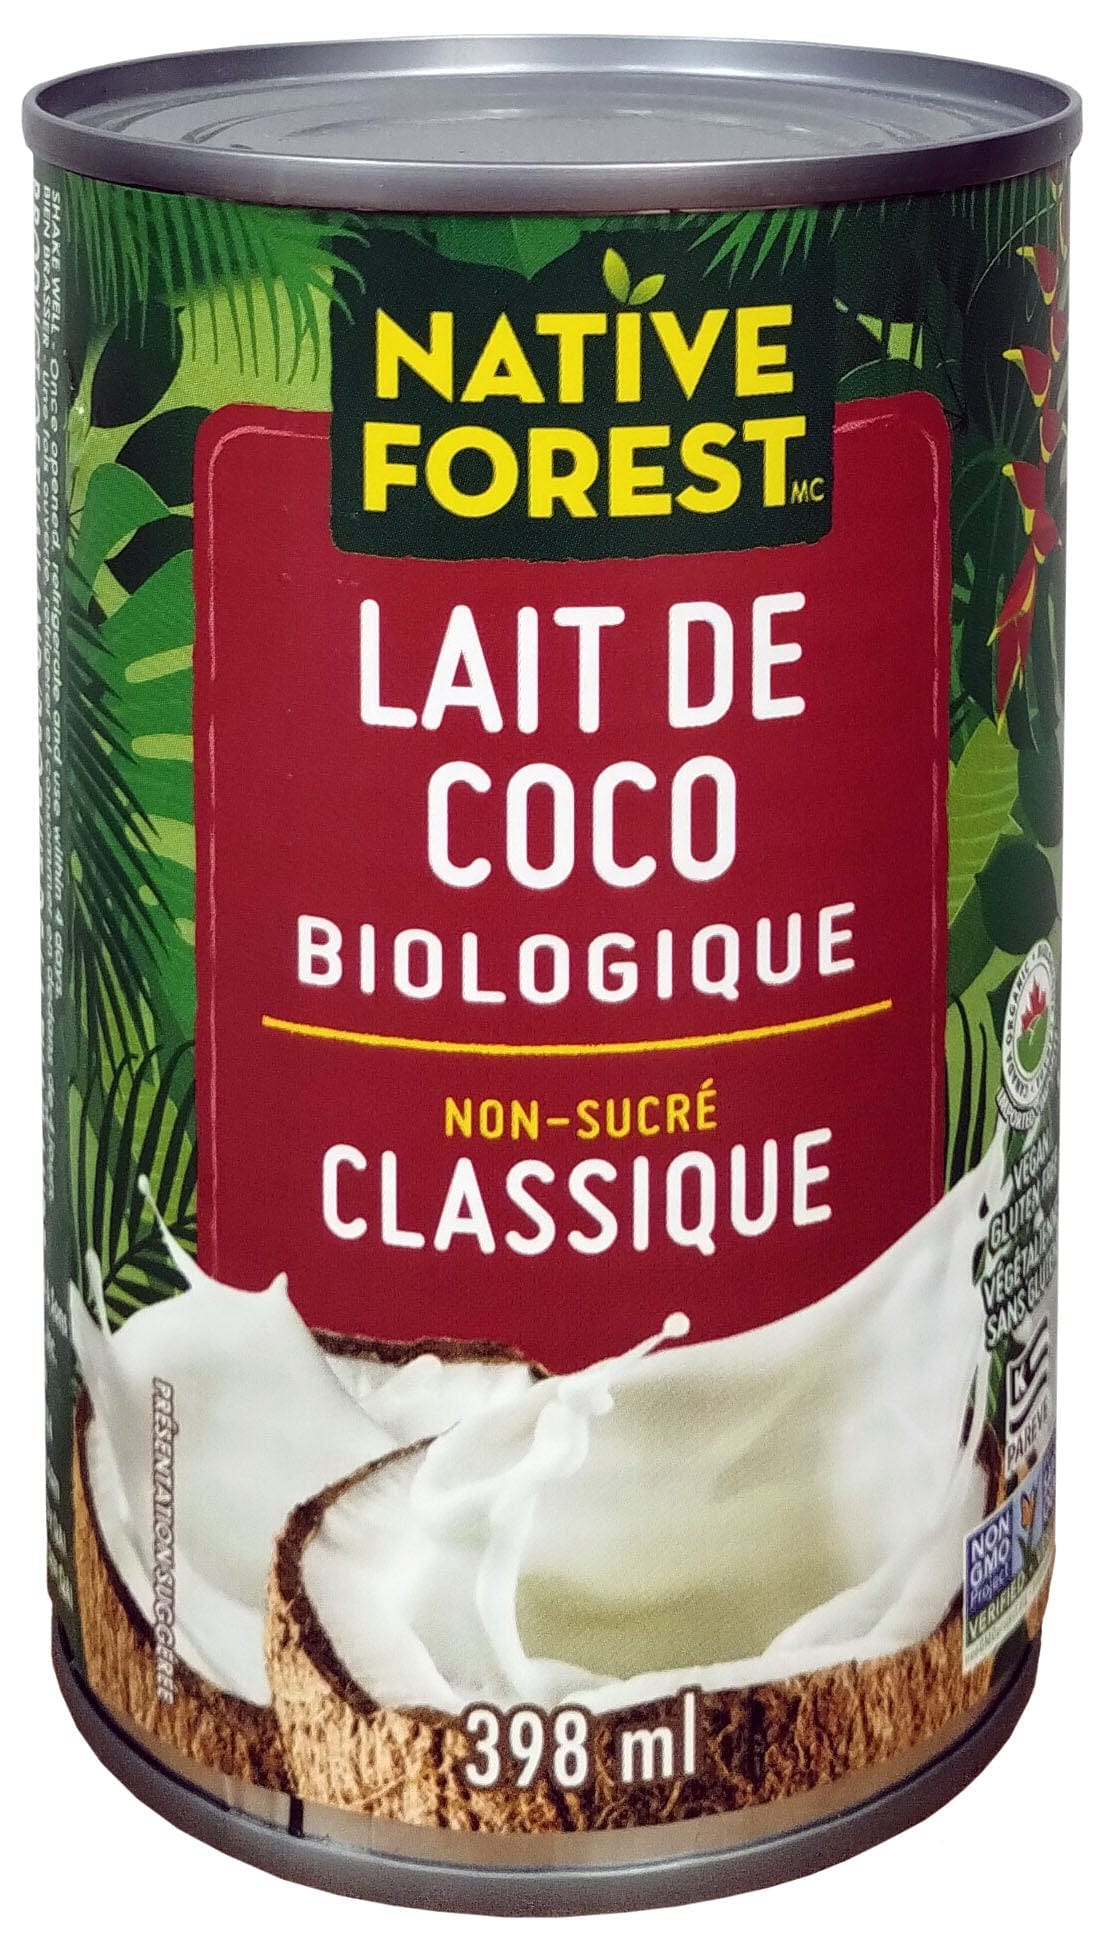 NATIVE FOREST Épicerie Lait de coco non-sucré régulier 398ml